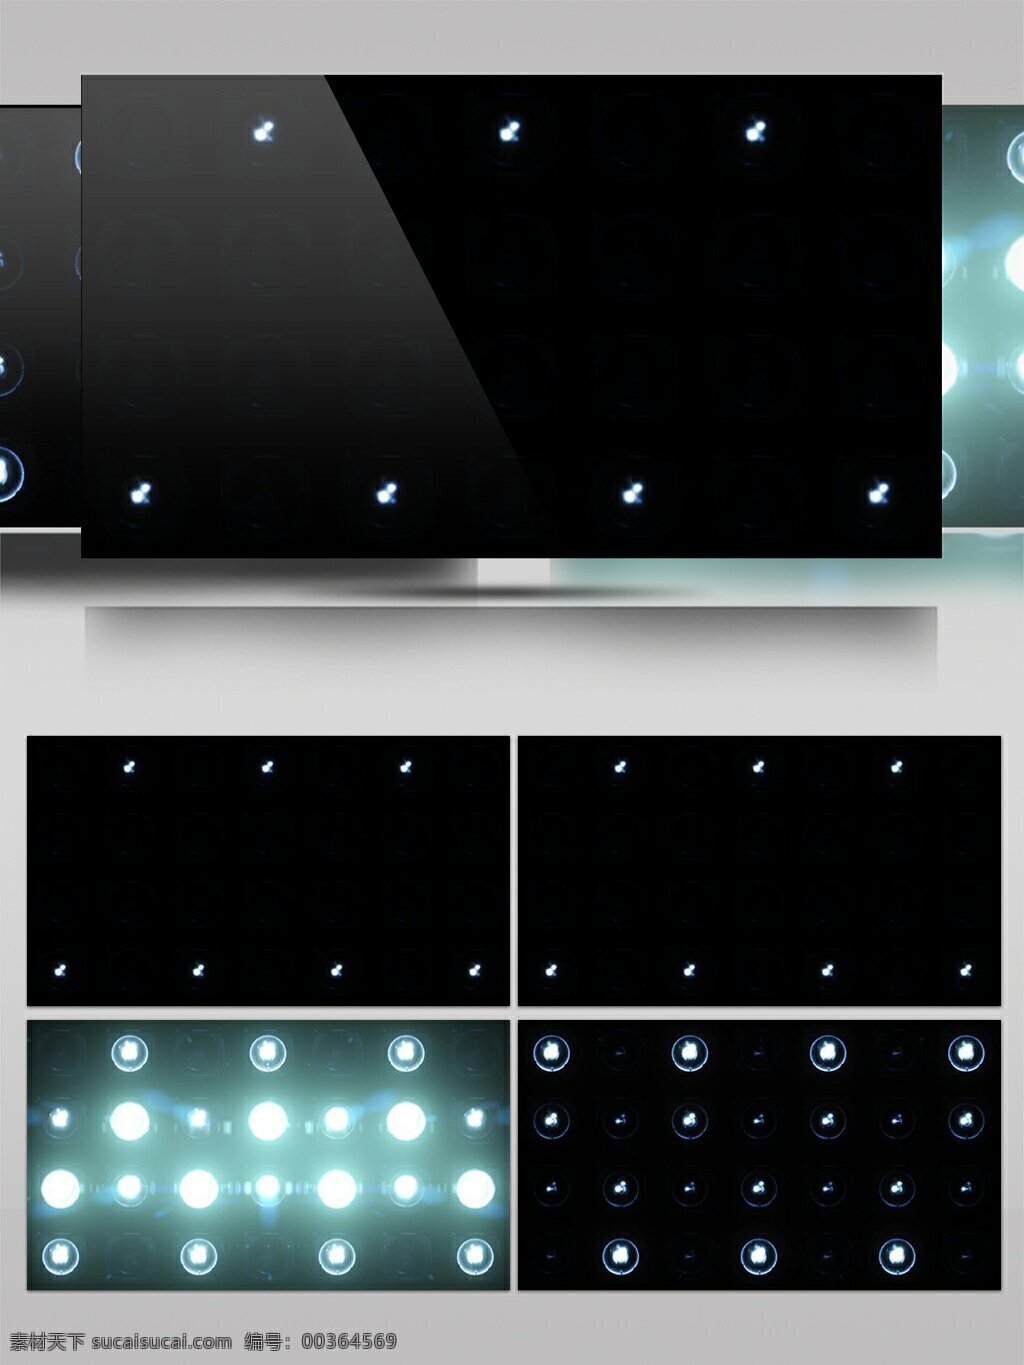 表演 会场 灯光 精致 布置 视频 白色 灯光装饰 动态视频素材 高清视频素材 会场布置 视频素材